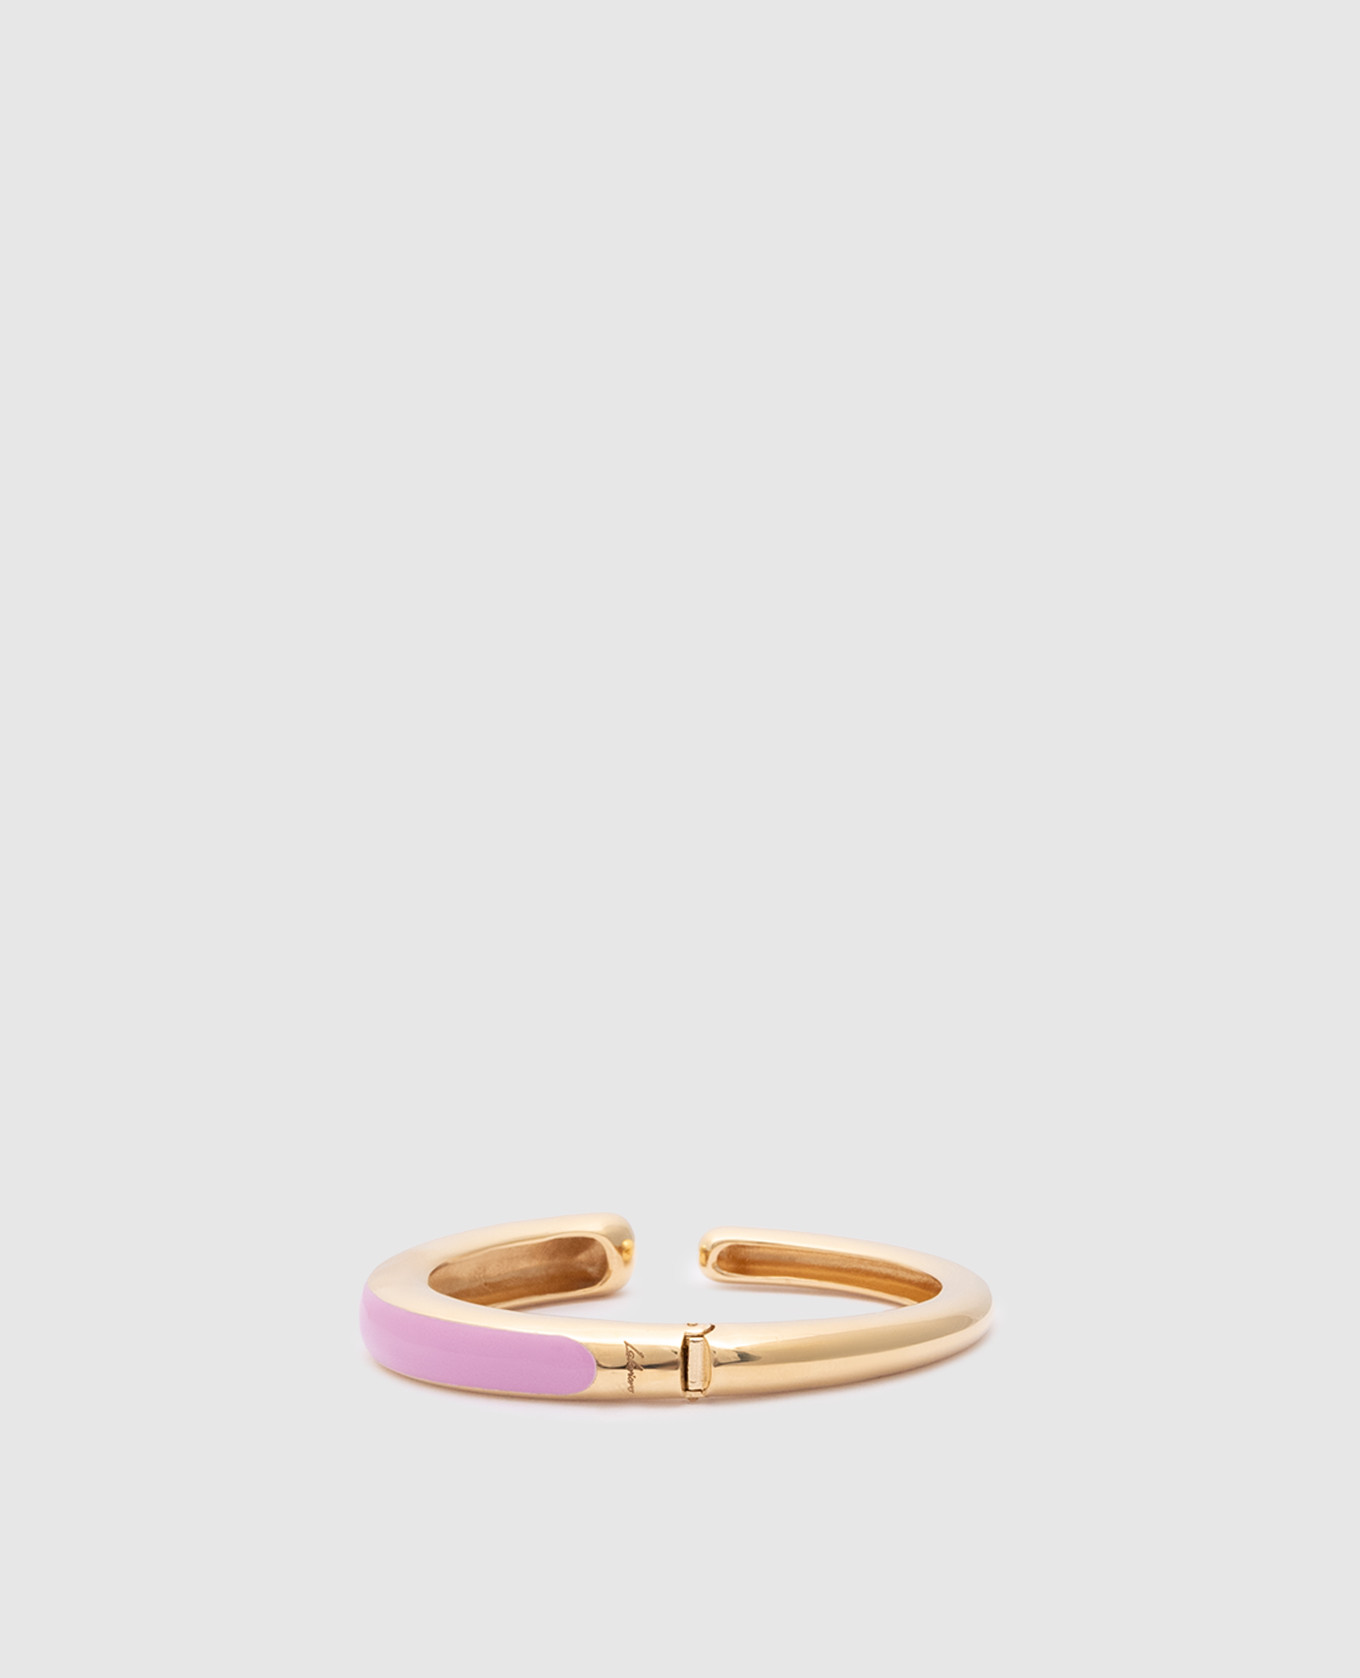 Pop silver bracelet with pink enamel